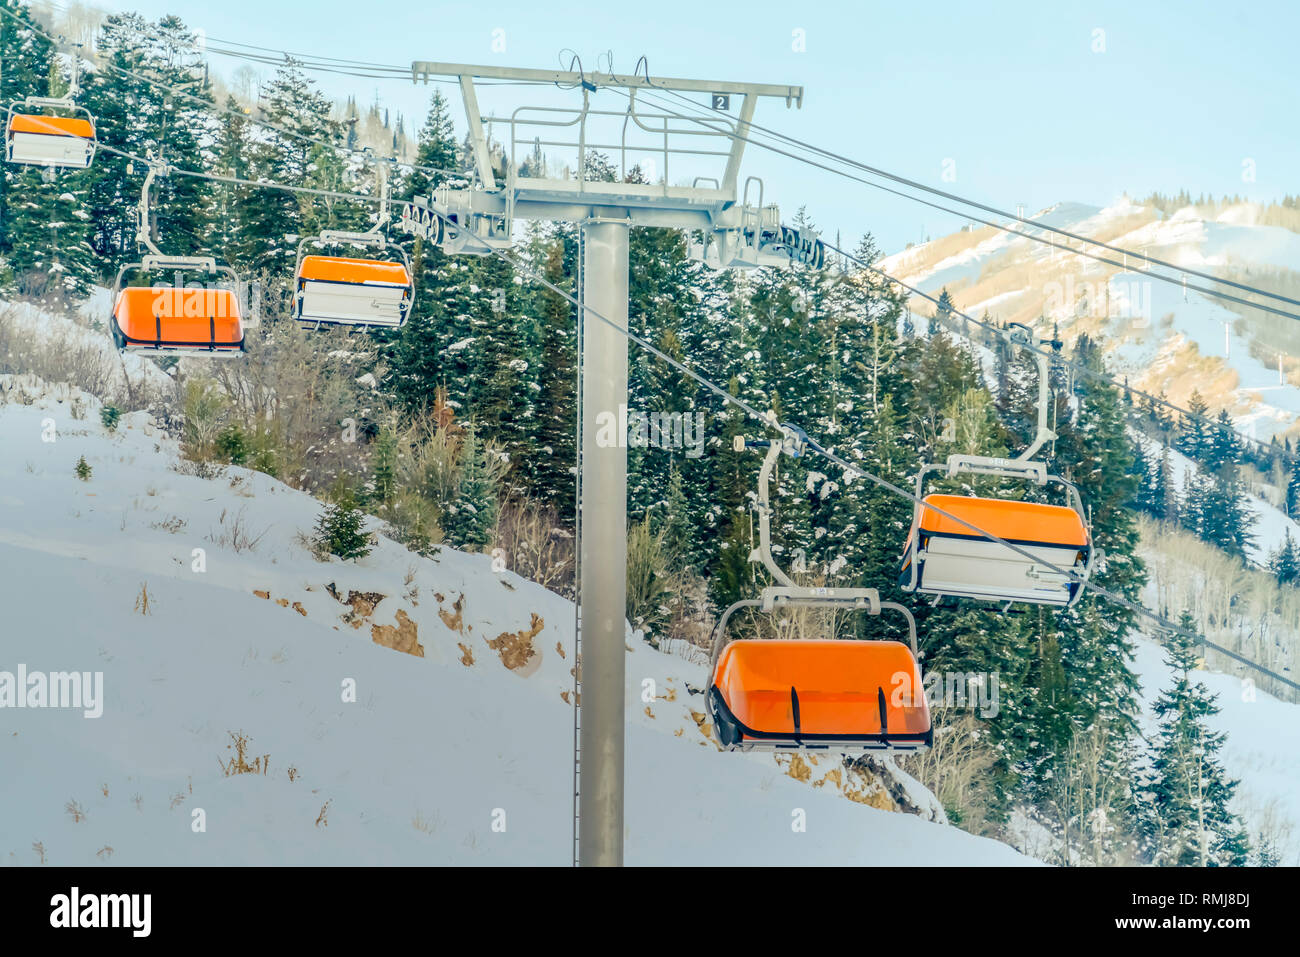 Ski resort with vibrant ski lift in Park City Utah Stock Photo